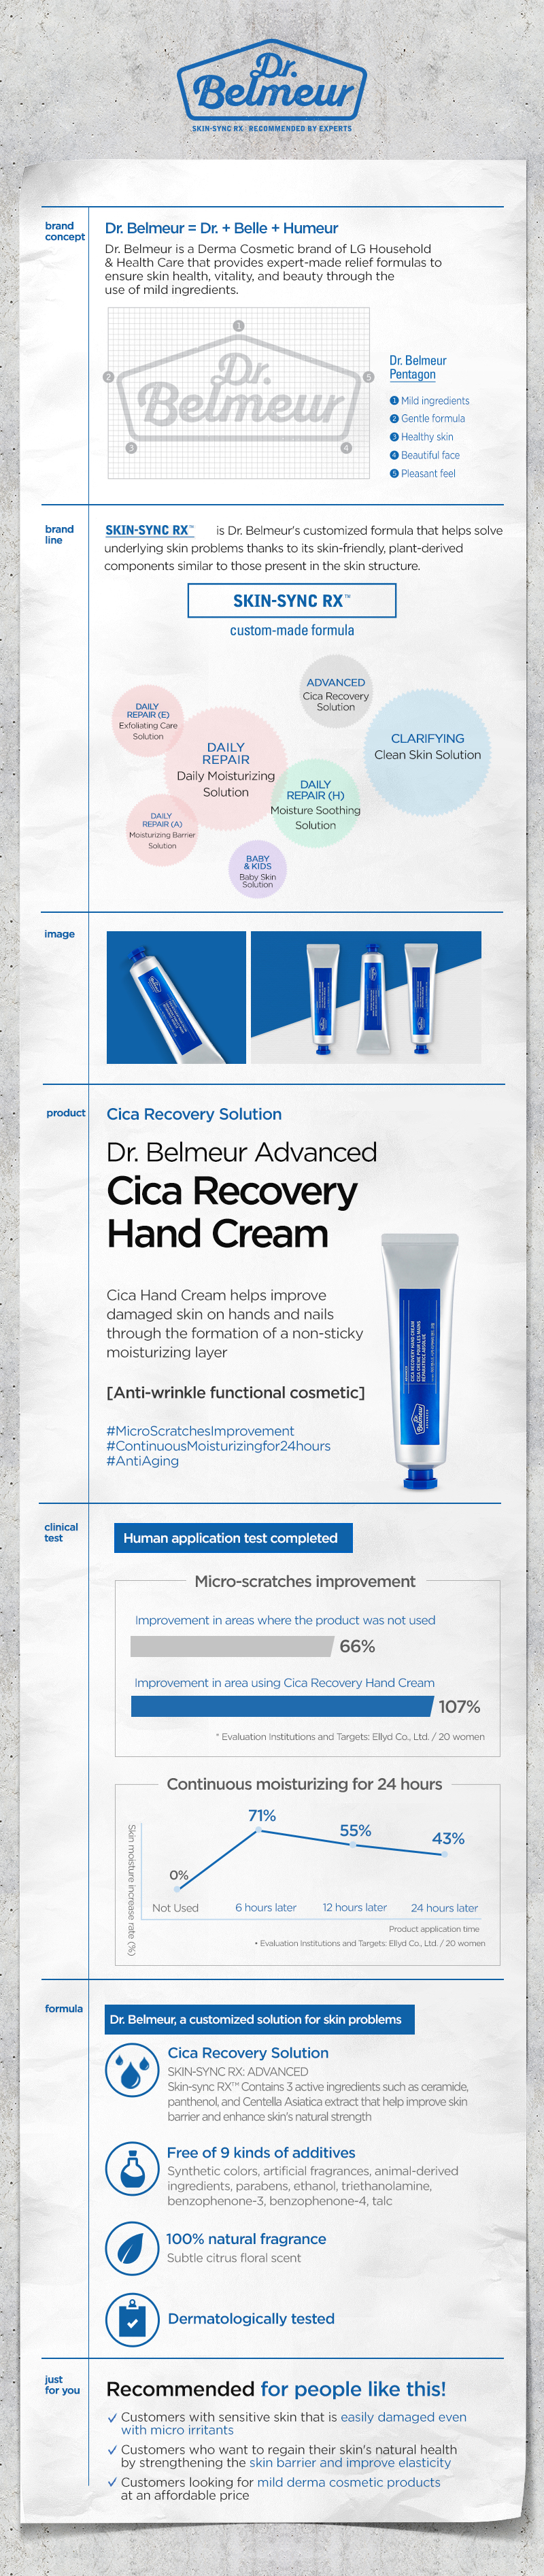 Dr Belmeur Advanced Cica Recovery Hand Cream